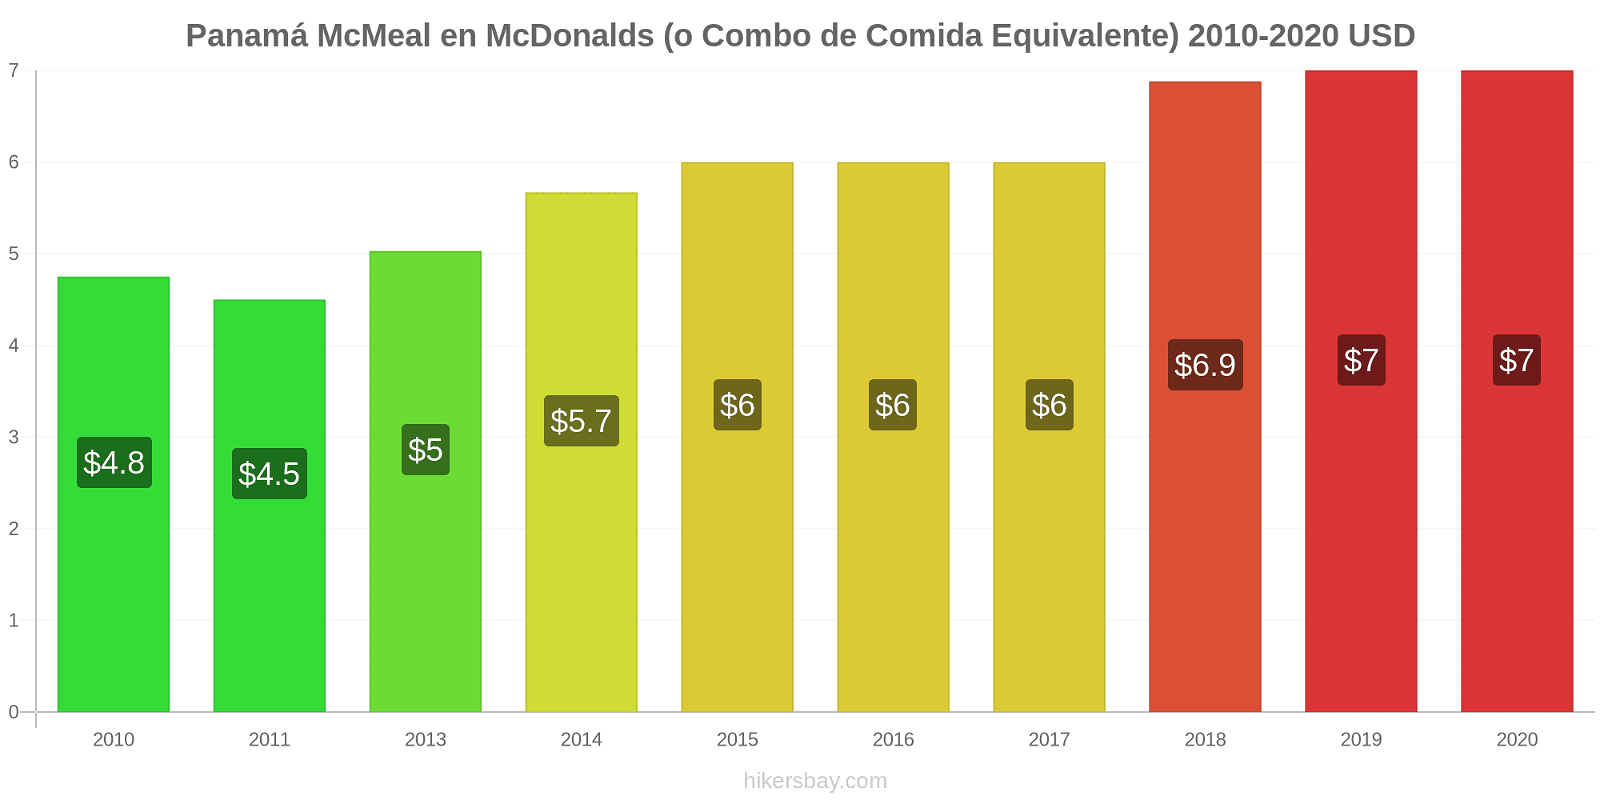 Panamá cambios de precios McMeal en McDonalds (o menú equivalente) hikersbay.com